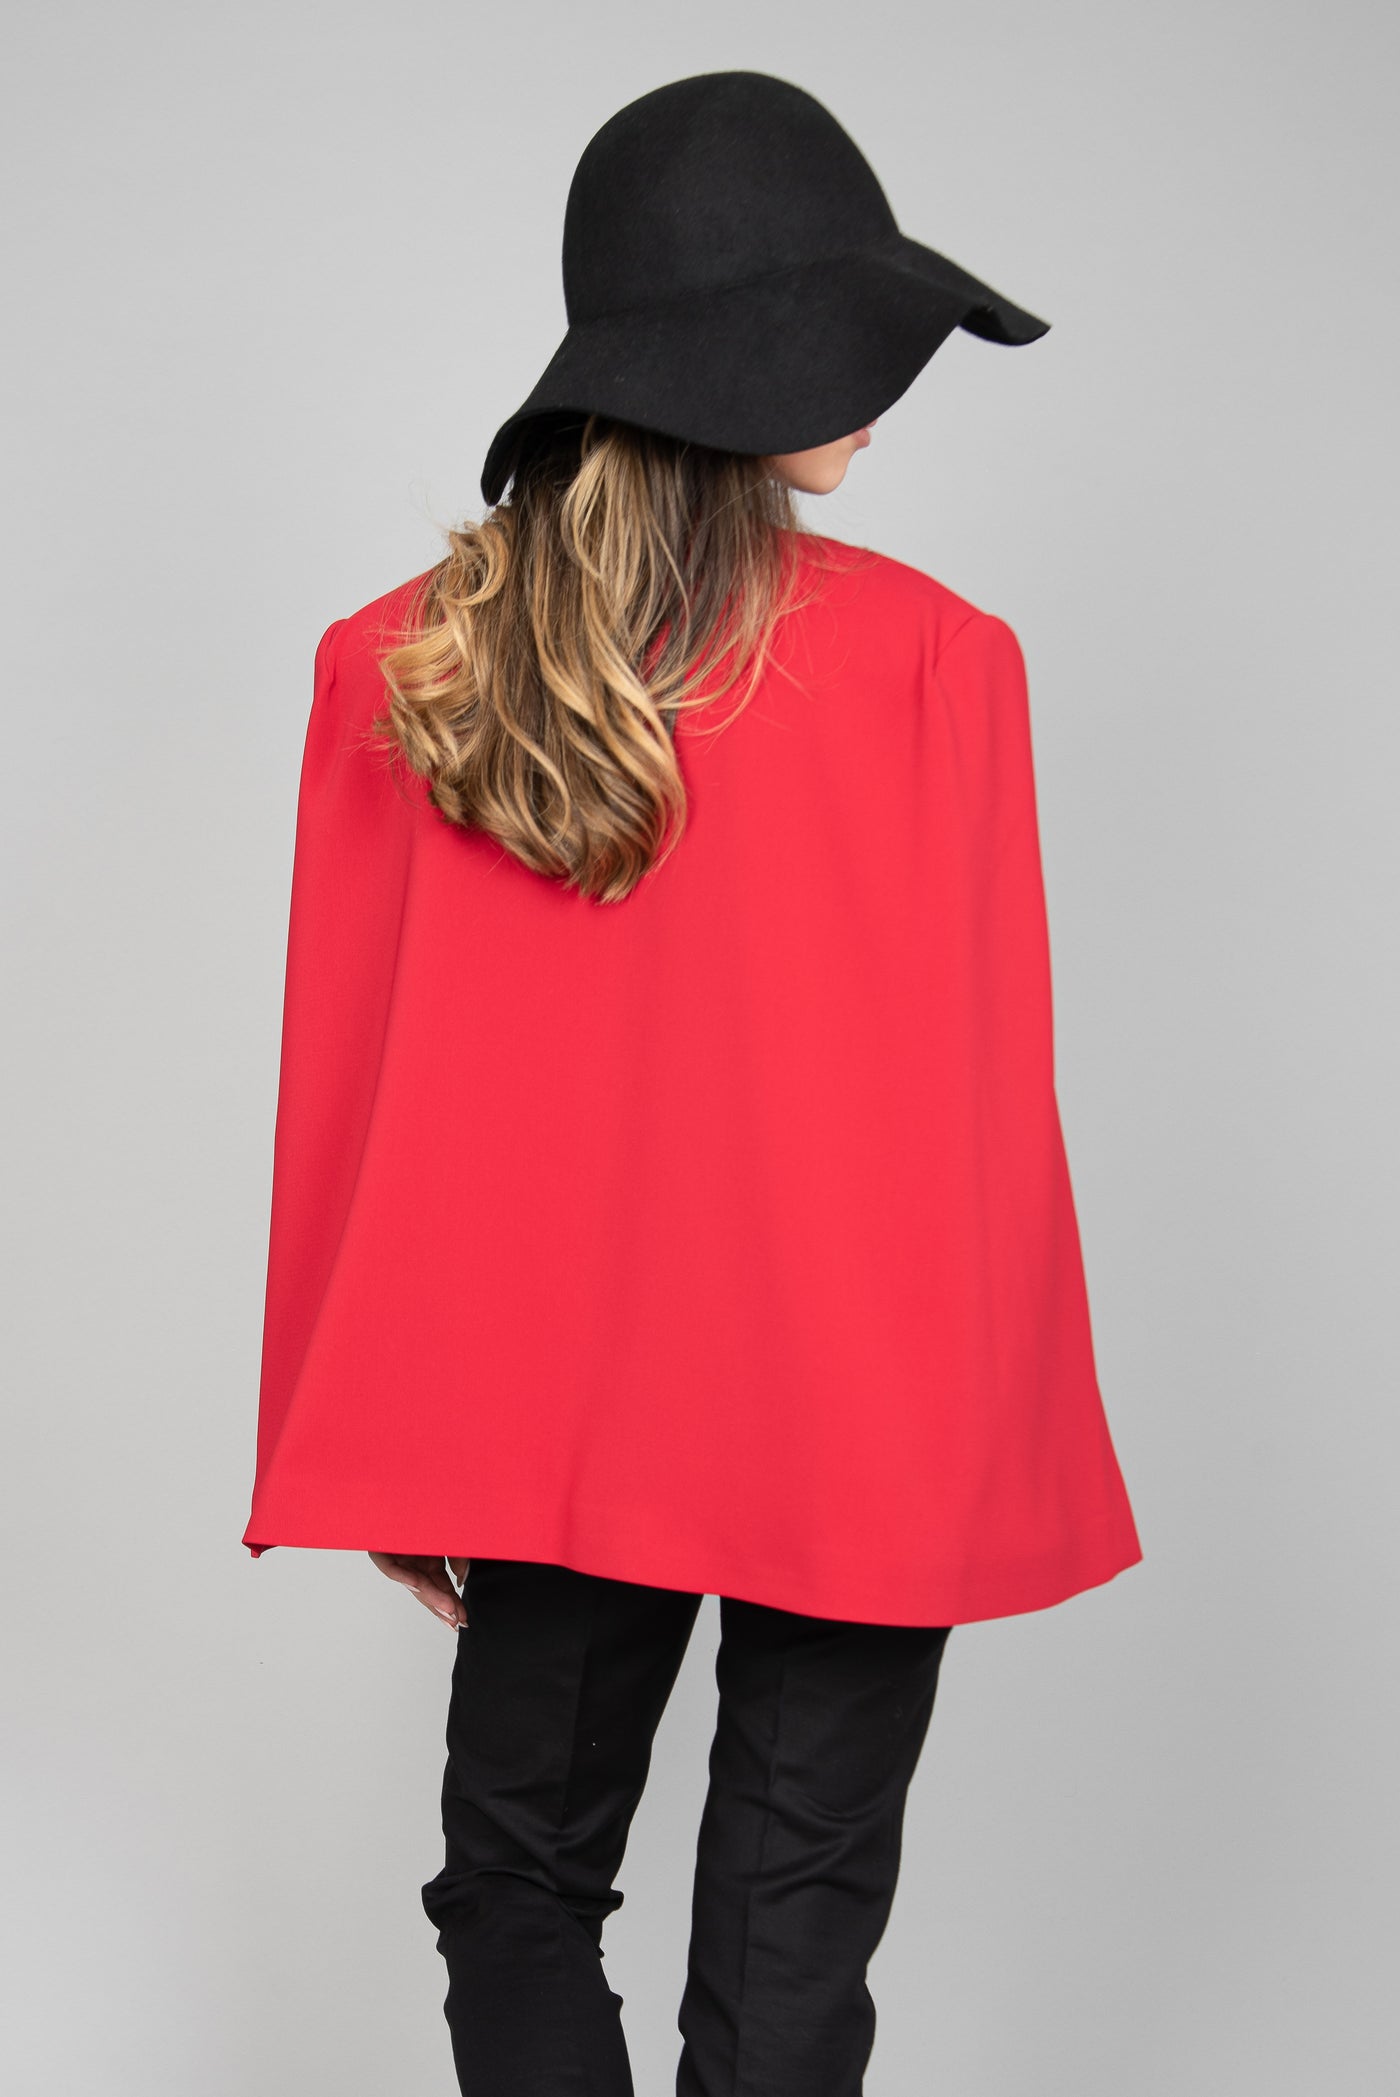 Red cape coat